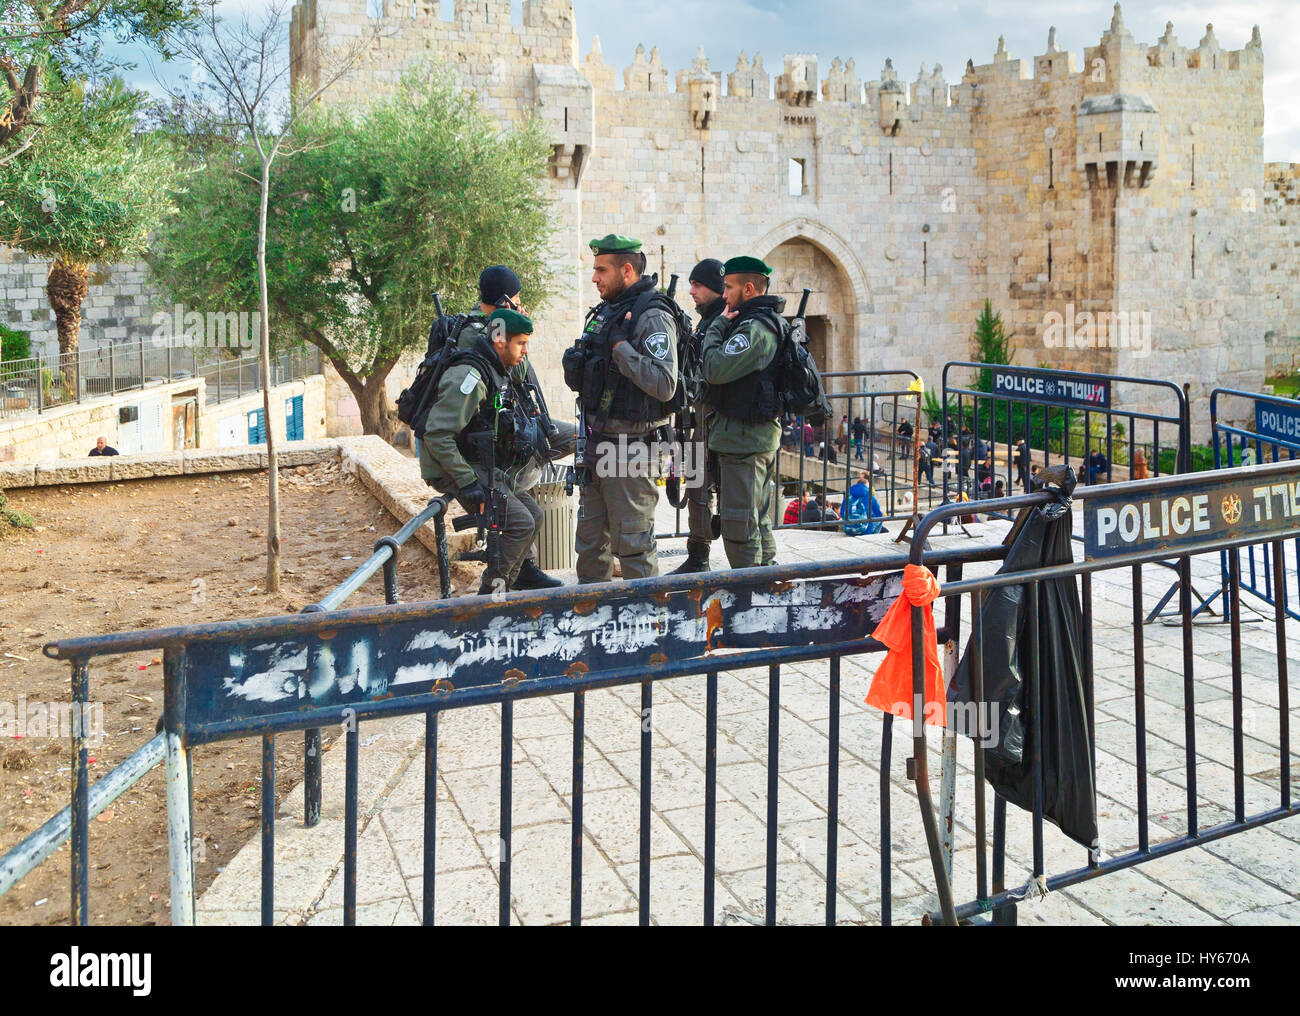 Jérusalem, Israël - 29 décembre 2016 : Les agents sont en service près de Damas Nachem Gate de vieille ville de Jérusalem. Ils ont été construits au 16ème siècle Banque D'Images